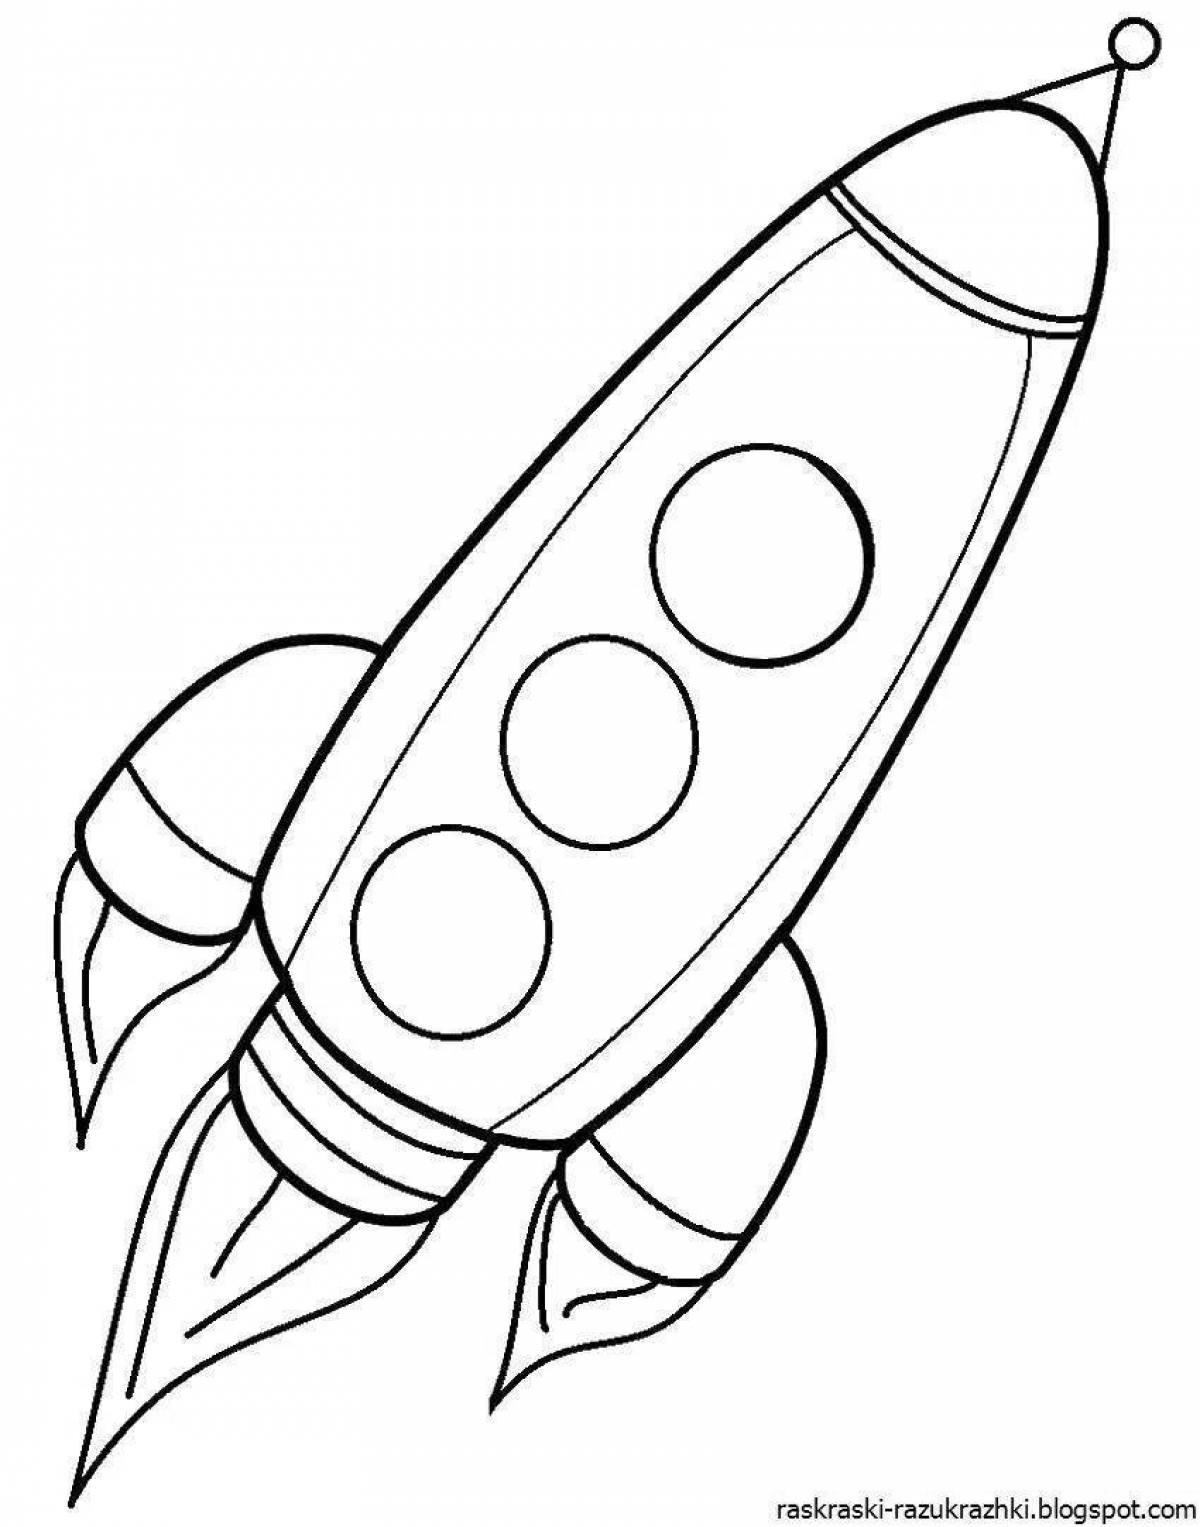 Сказочная ракета-раскраска для детей